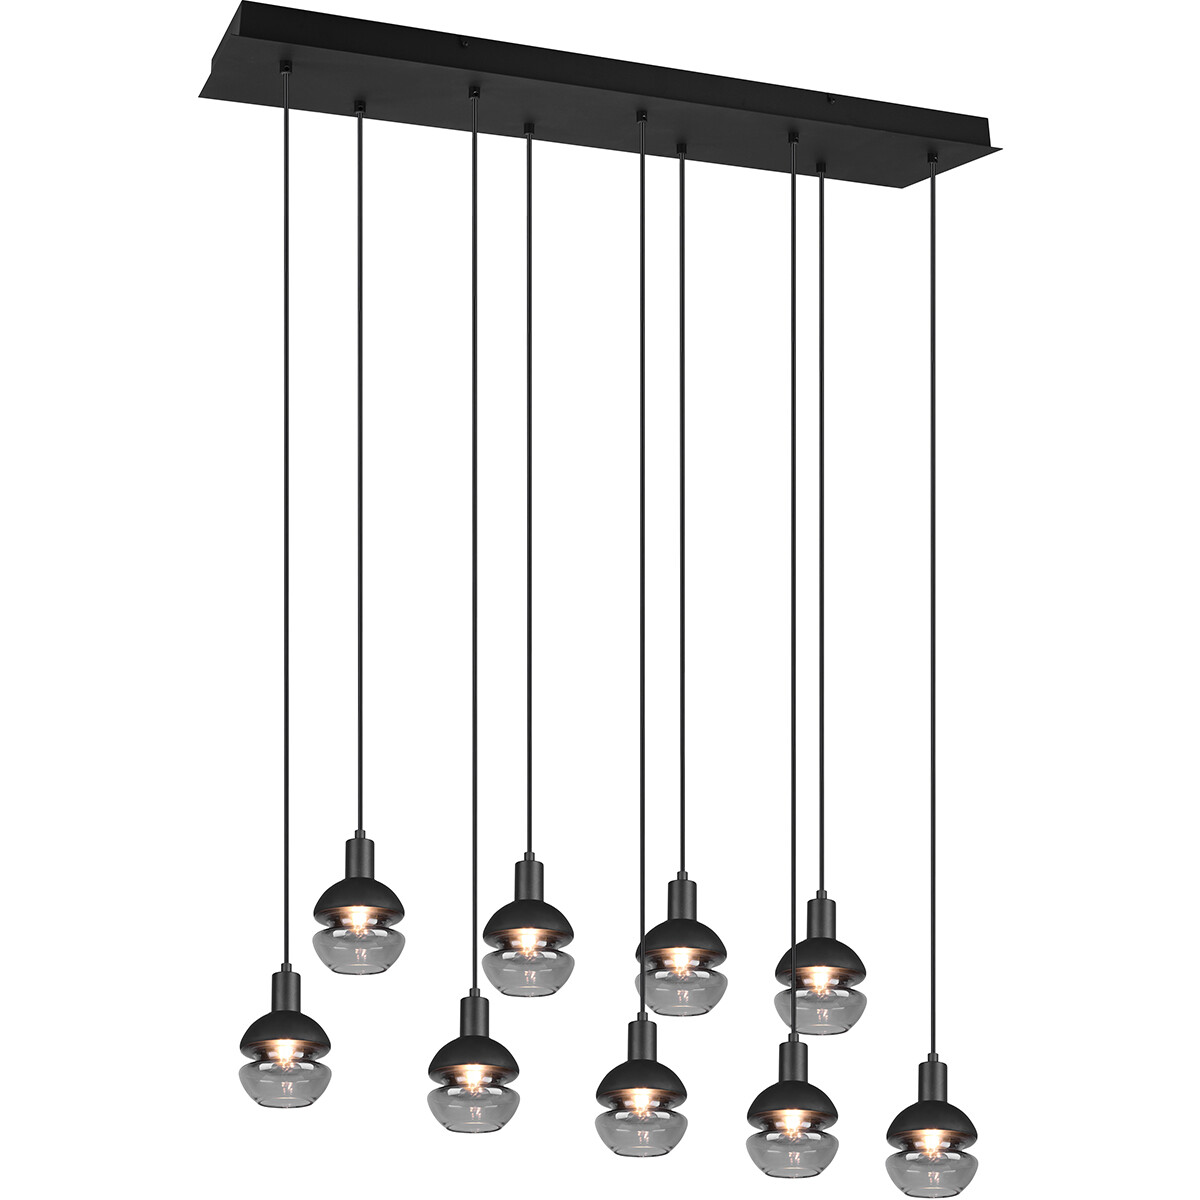 LED Hanglamp Hangverlichting Trion Merda E14 Fitting 9-lichts Rechthoek Mat Zwart Aluminium